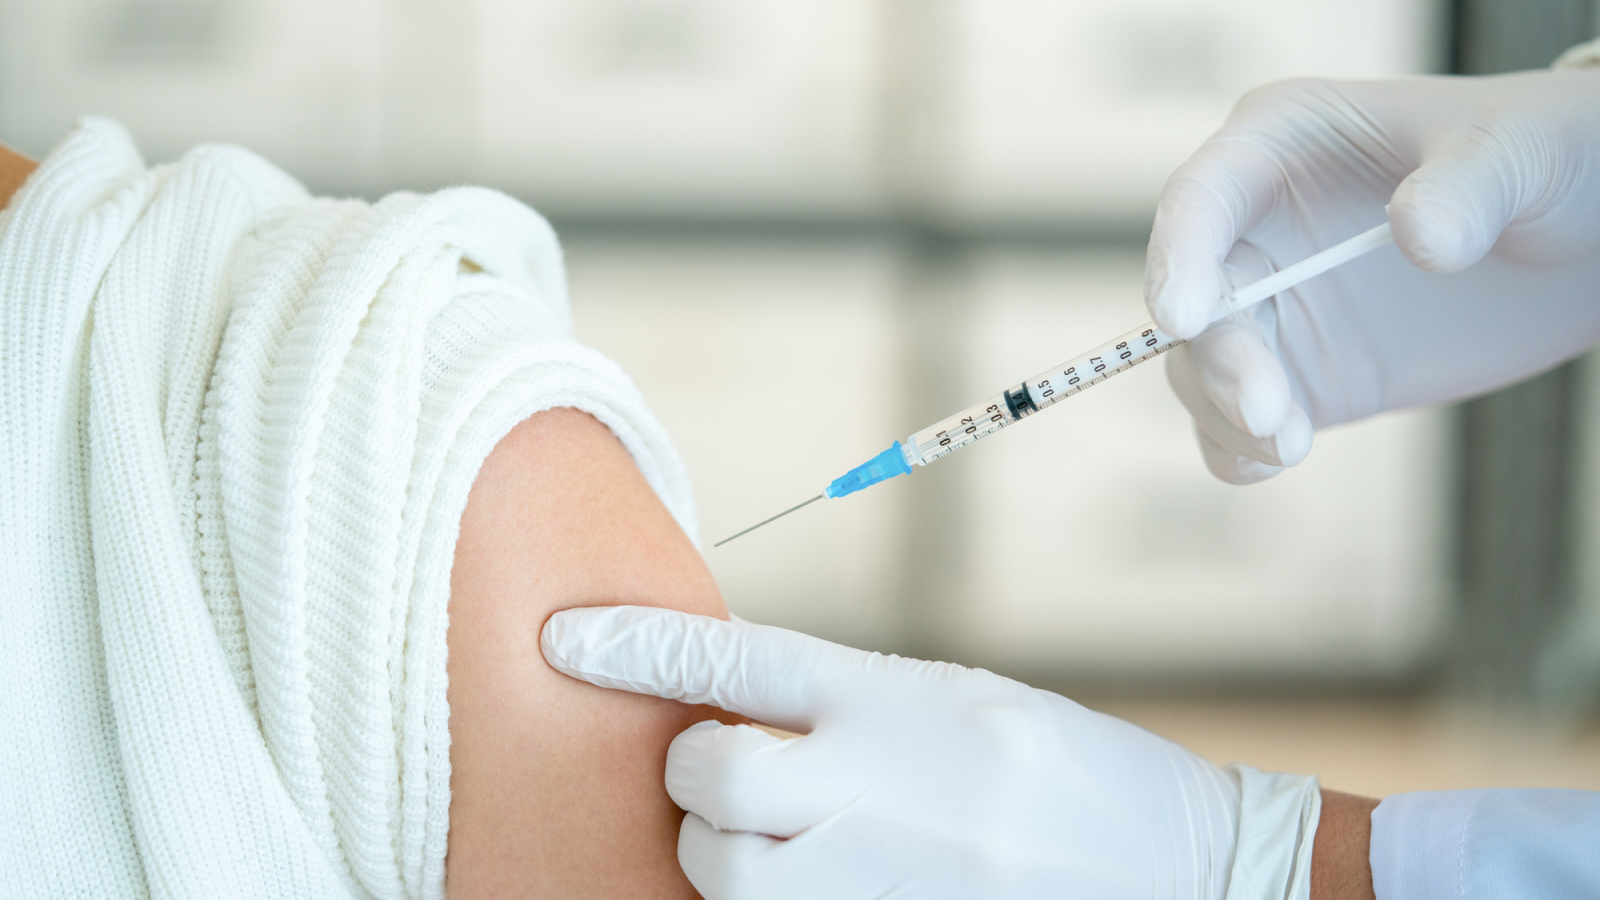 【海外論文】インフルワクチンがアルツハイマー病のリスク低下と関連